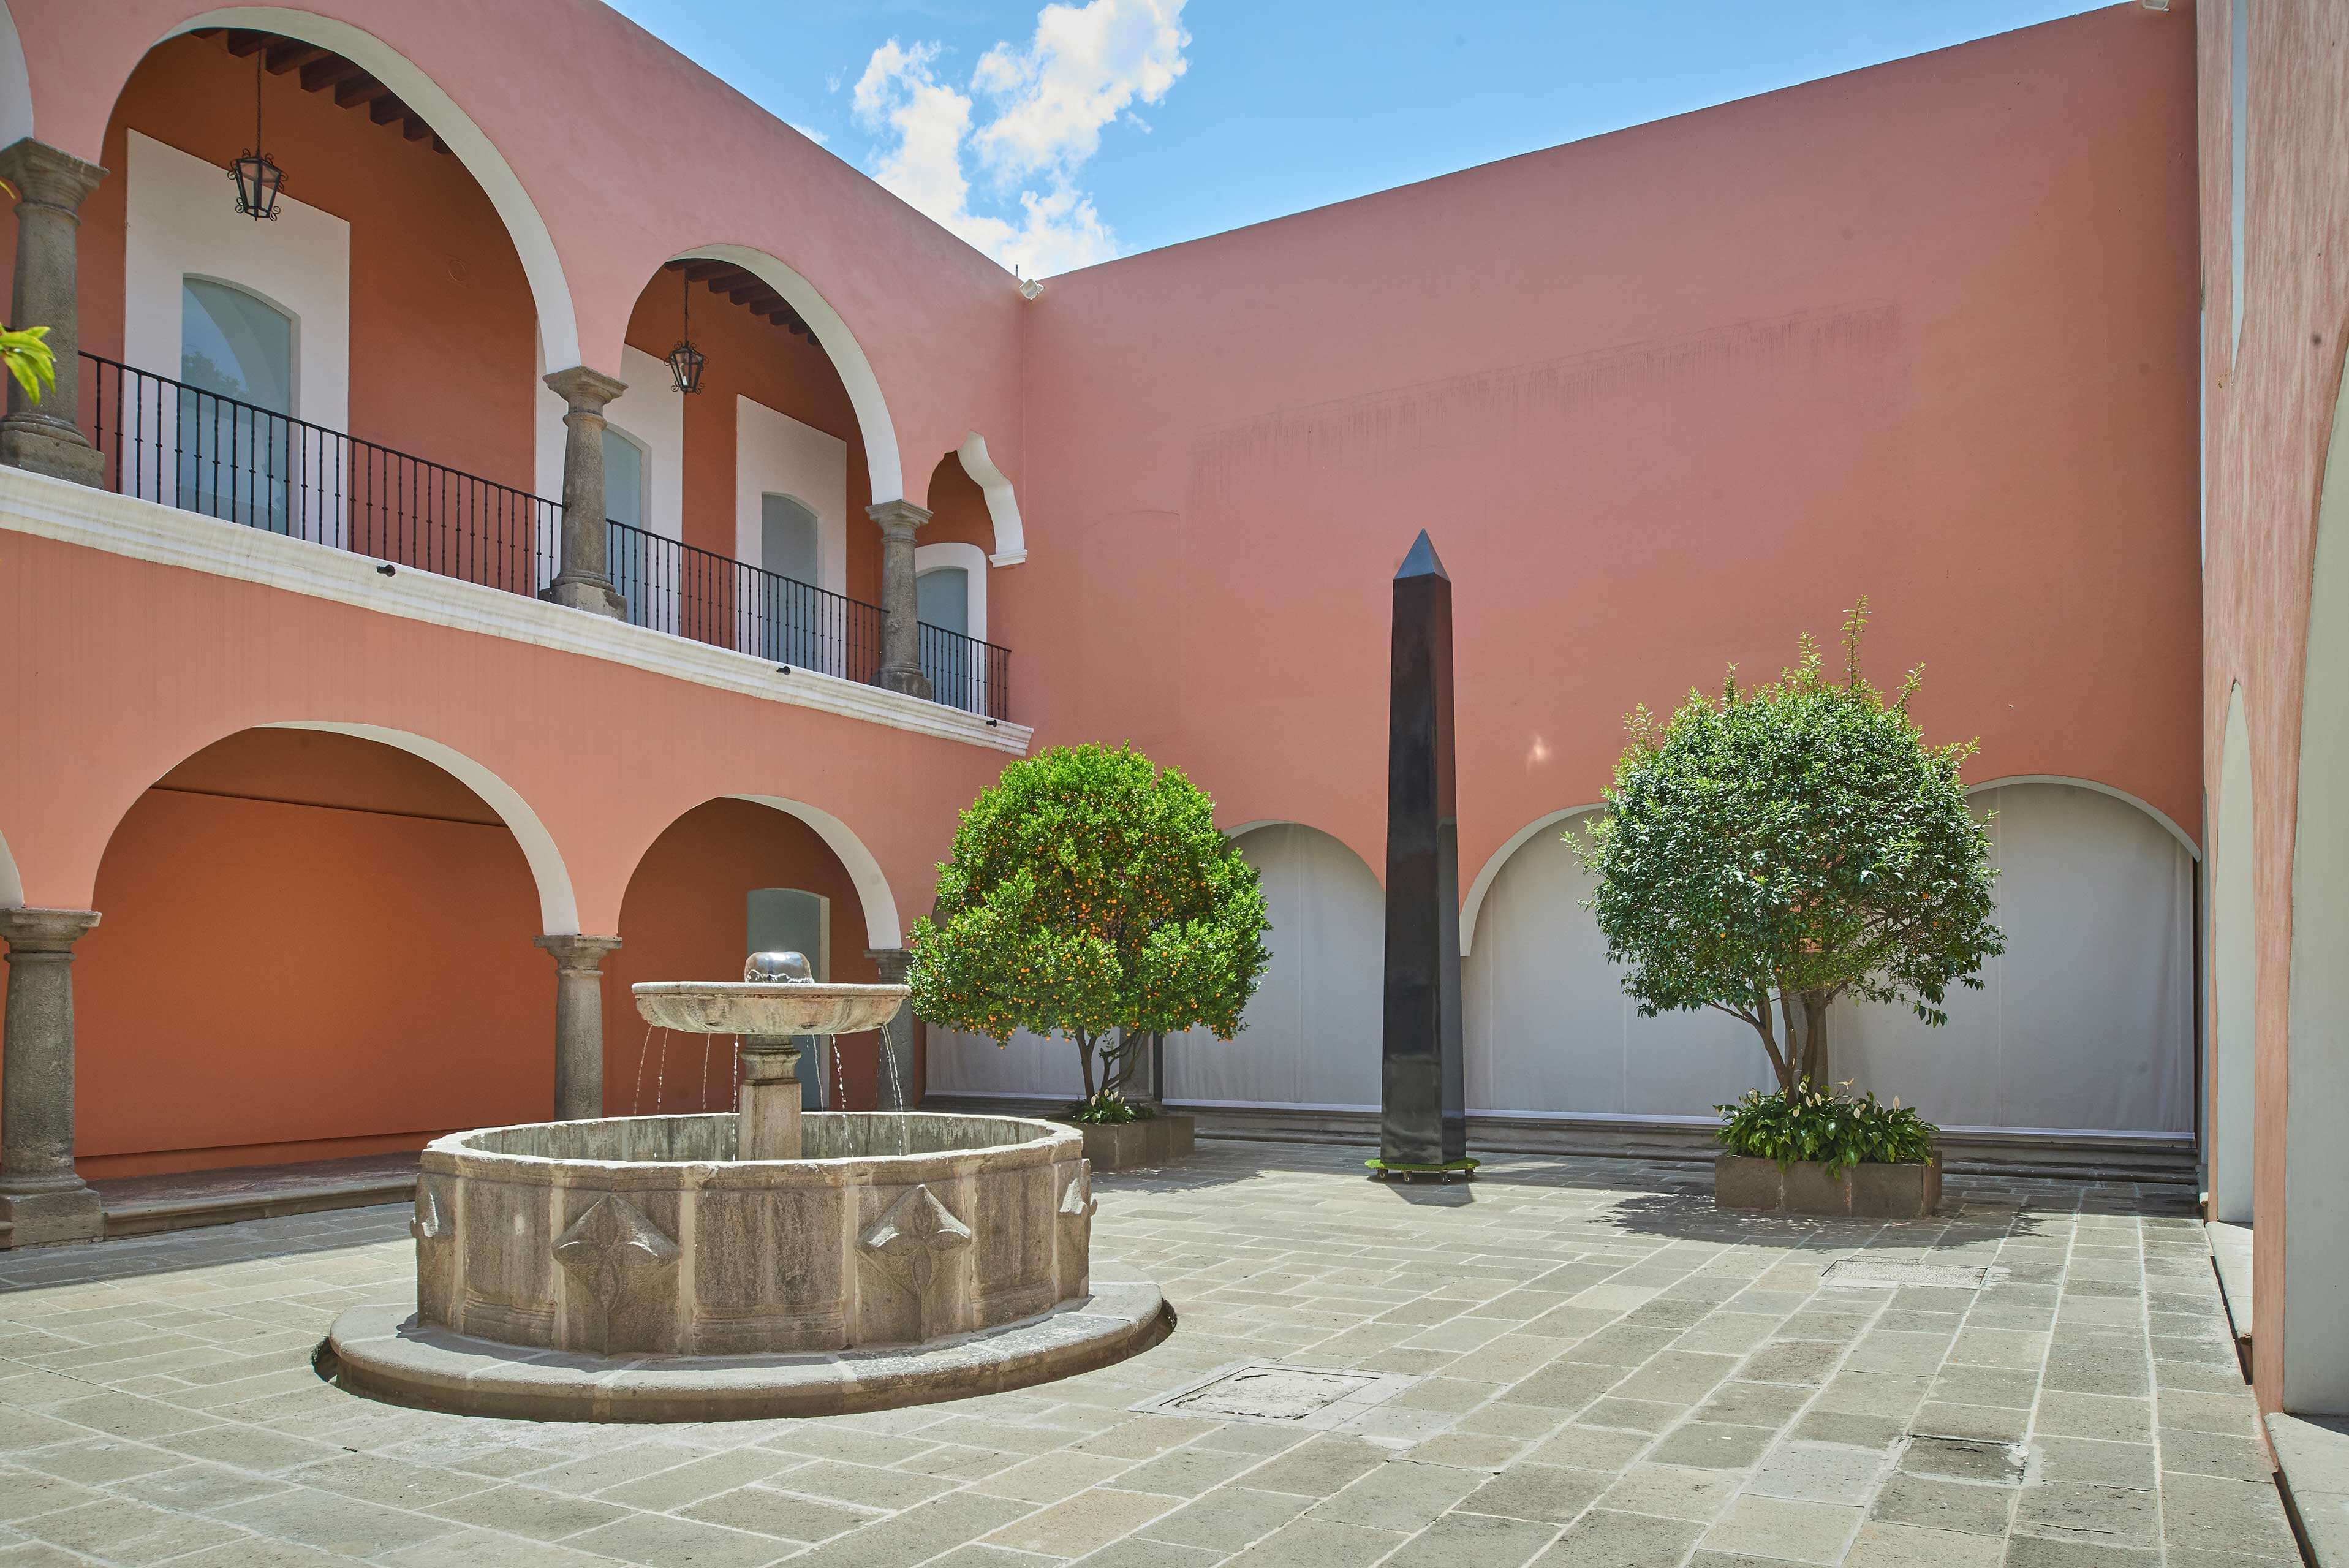 Obelisco transportable | El tiempo en las cosas II. Salas de Arte Contemporáneo | Museo Amparo, Puebla